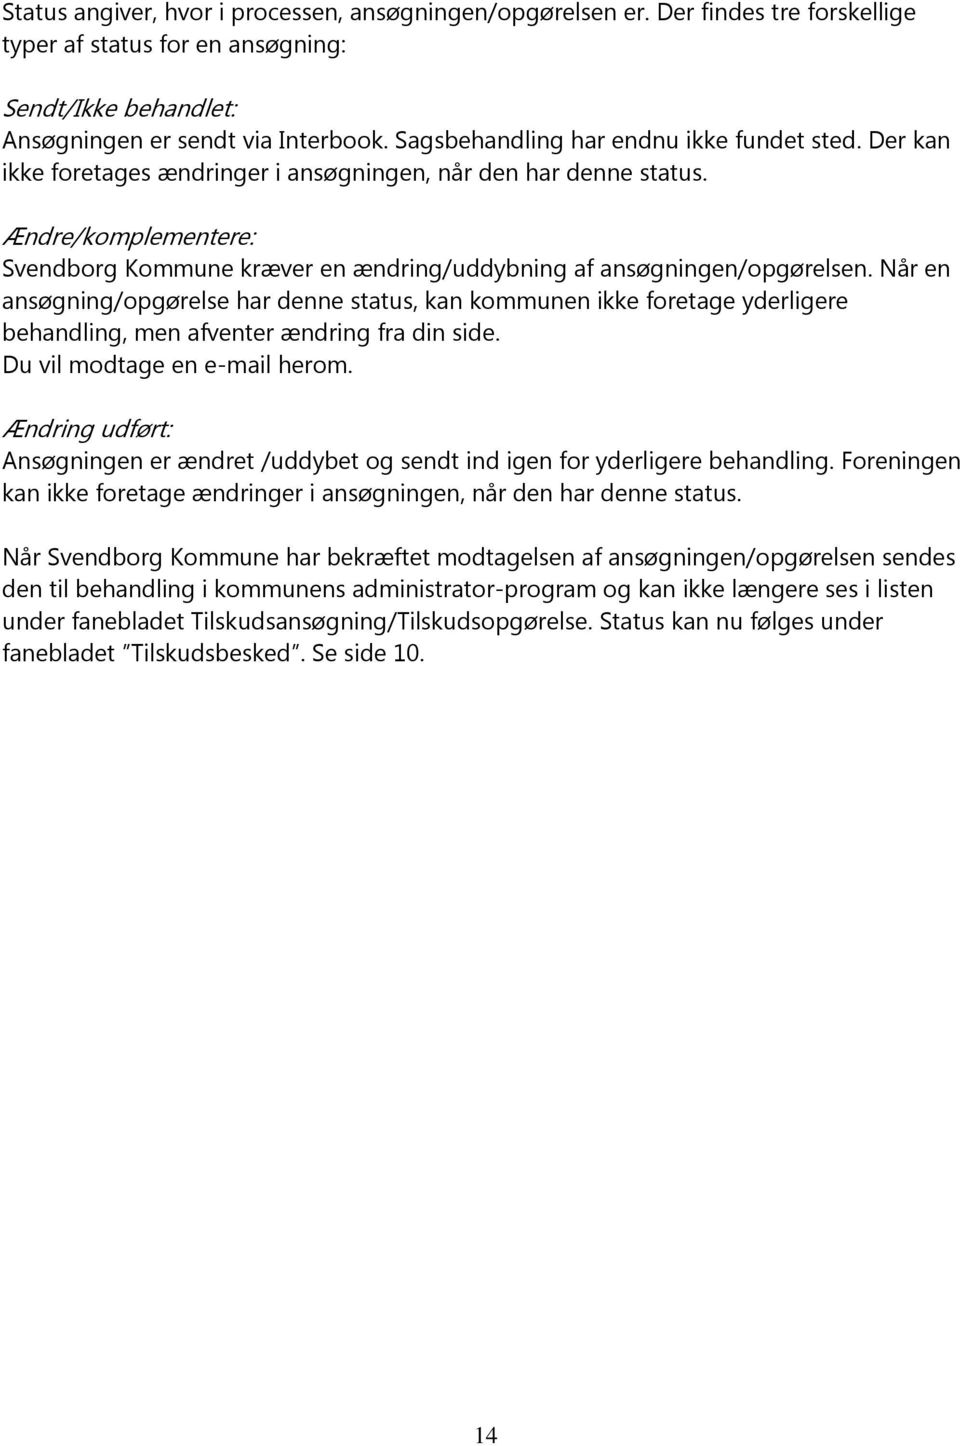 Ændre/komplementere: Svendborg Kommune kræver en ændring/uddybning af ansøgningen/opgørelsen.